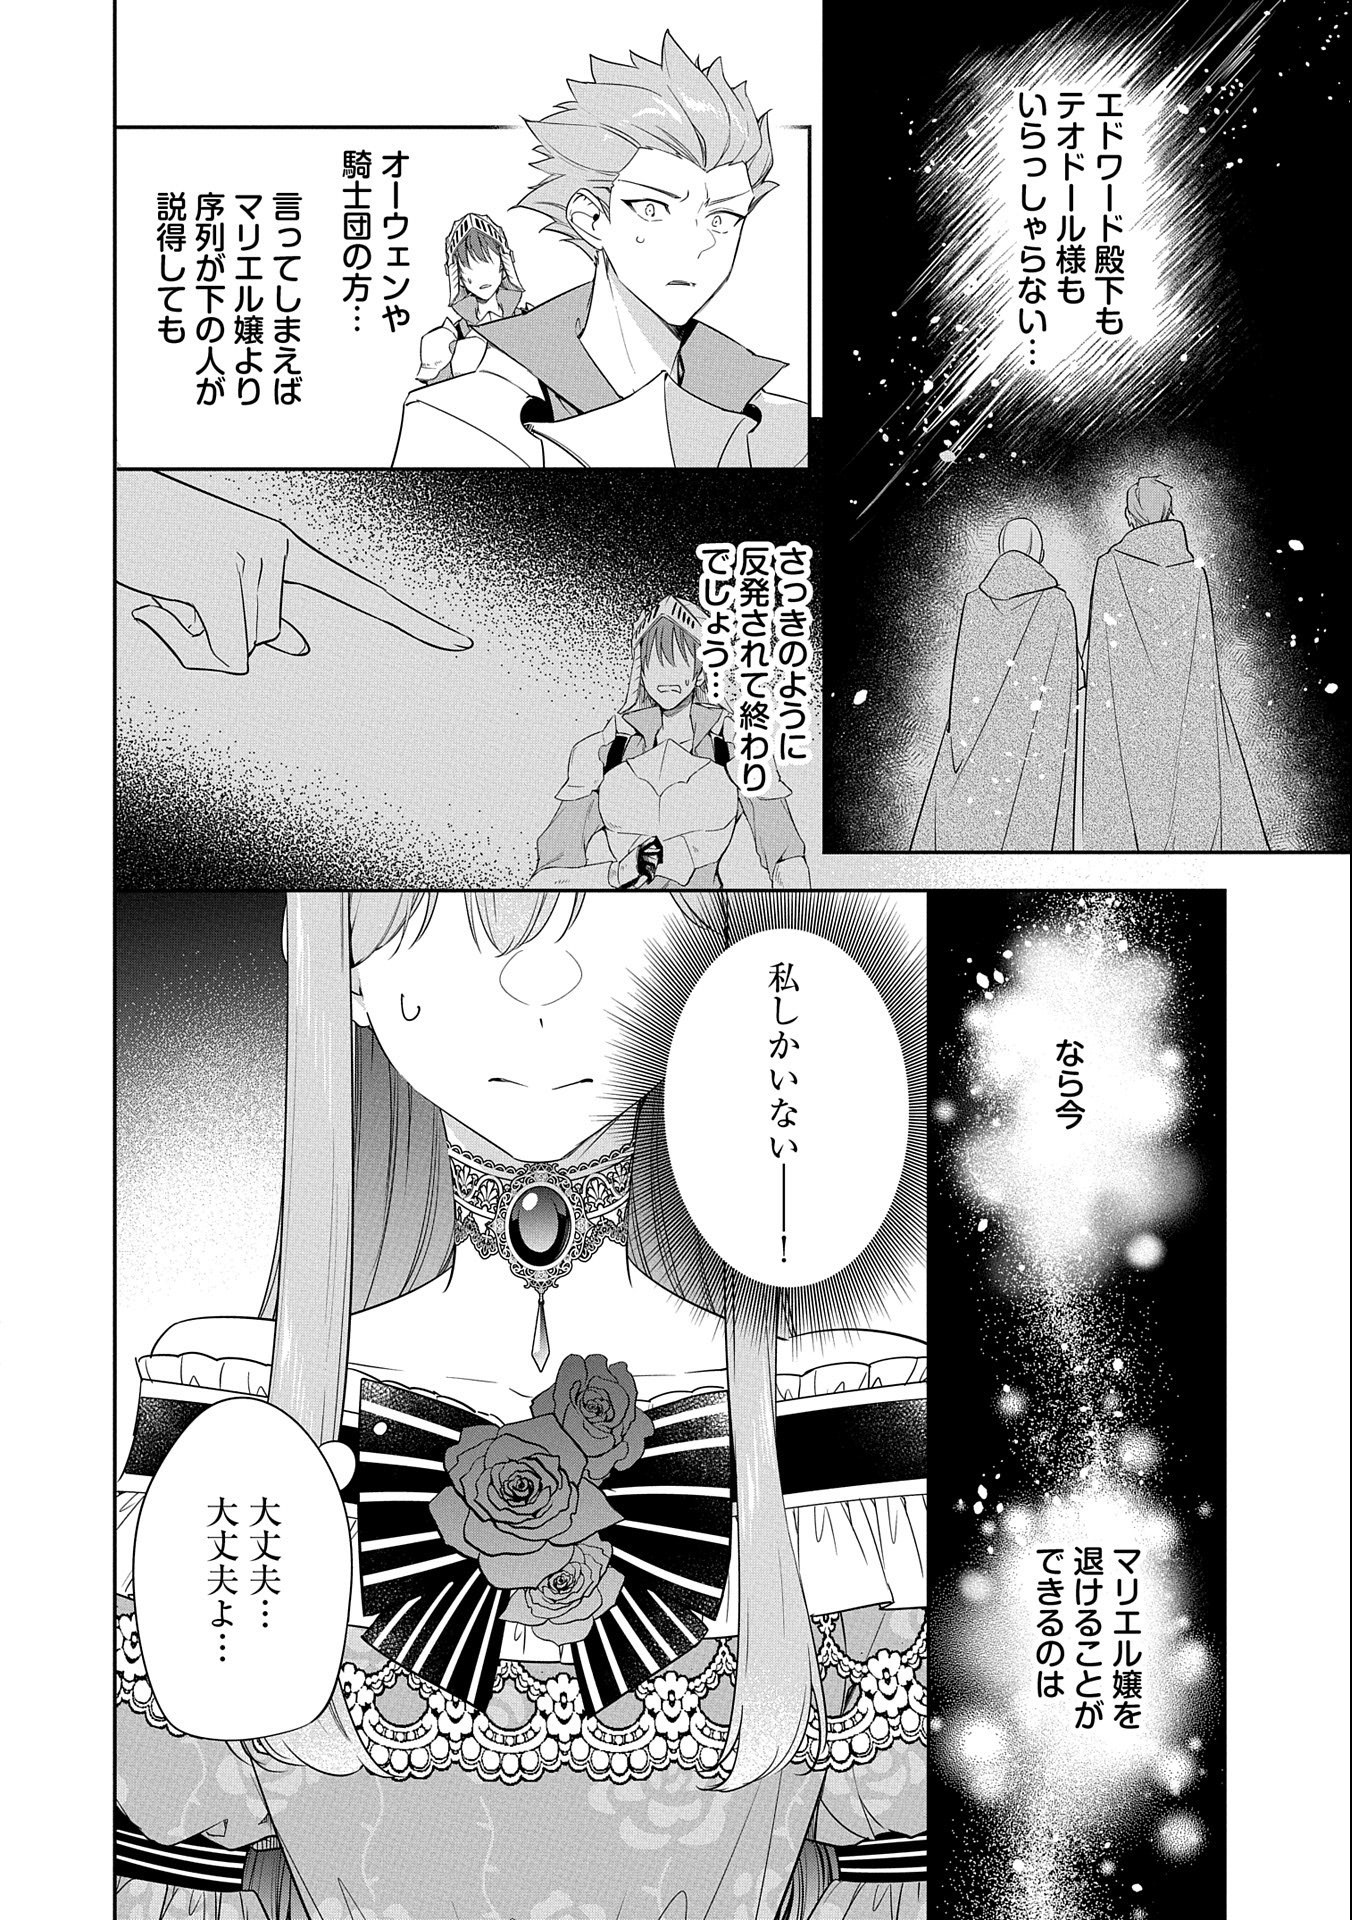 Mujikaku Seijo wa Kyou mo Muishiki ni Chikara wo Tare Nagasu - Chapter 18 - Page 2